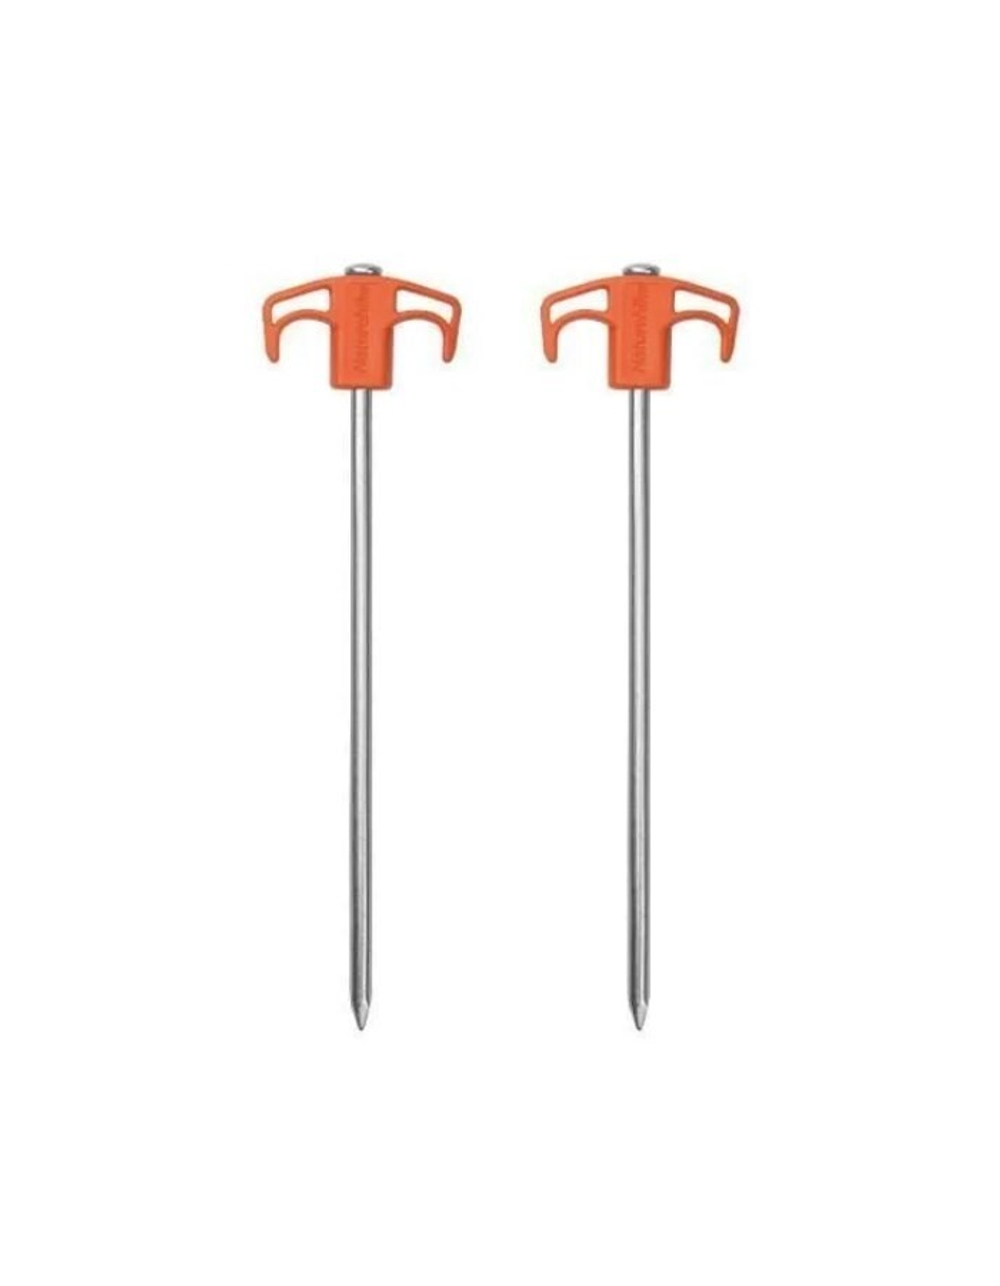 Колышки для палатки Naturehike оцинкованная сталь (2 шт.) 25 см, оранжевые